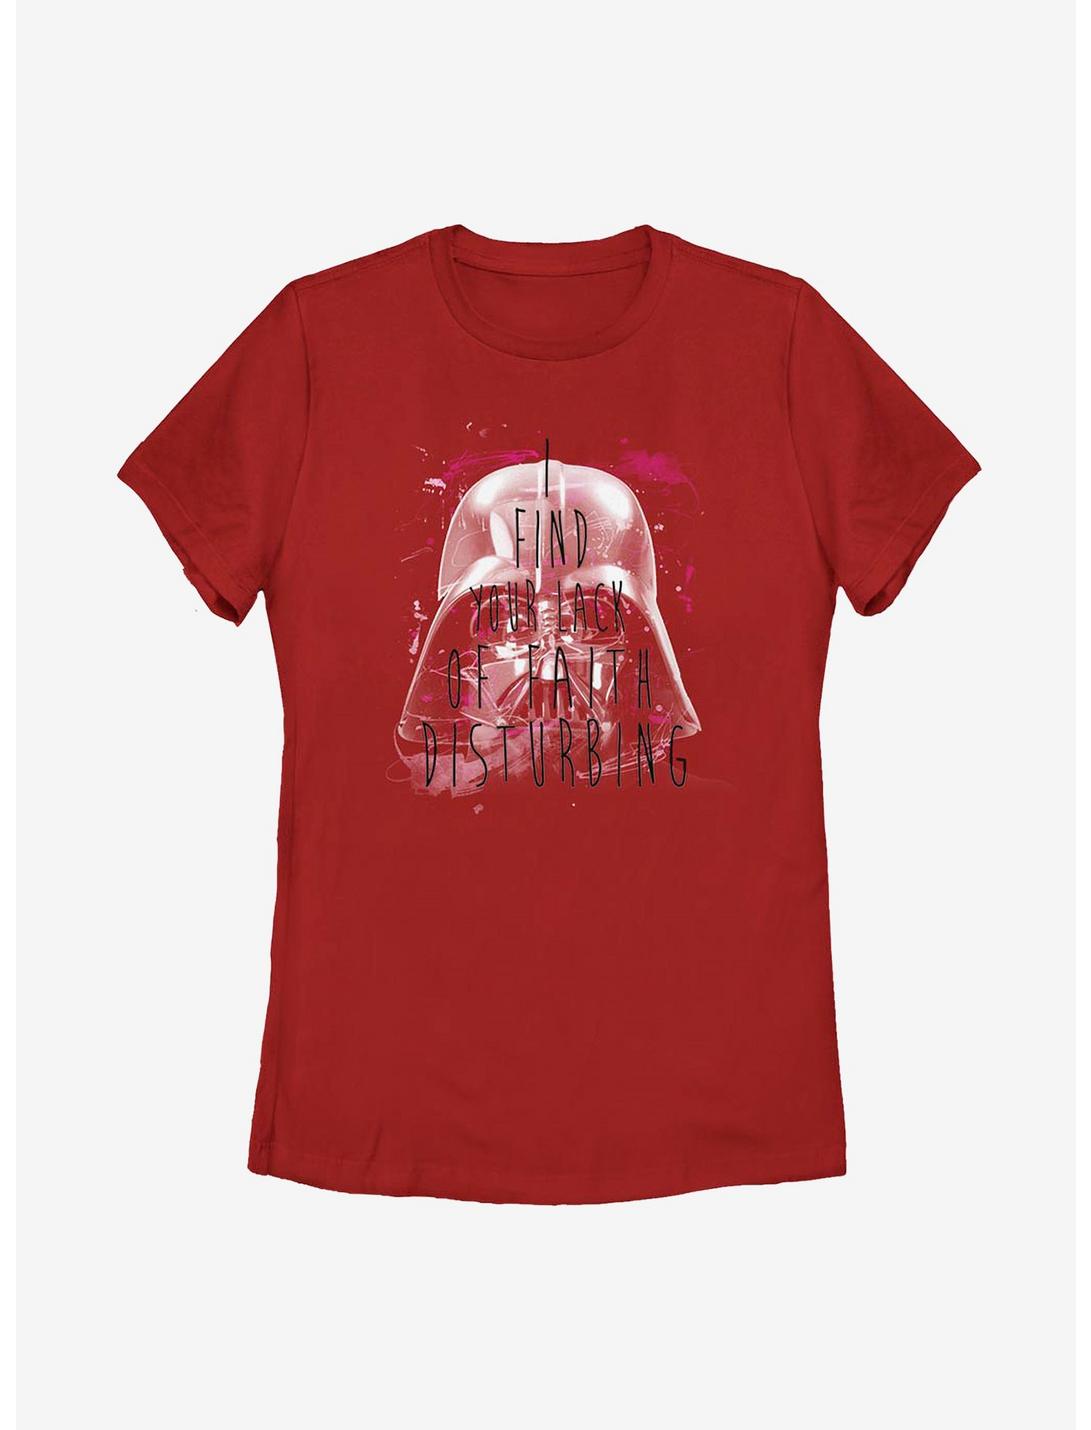 Star Wars Most Disturbing Womens T-Shirt, RED, hi-res